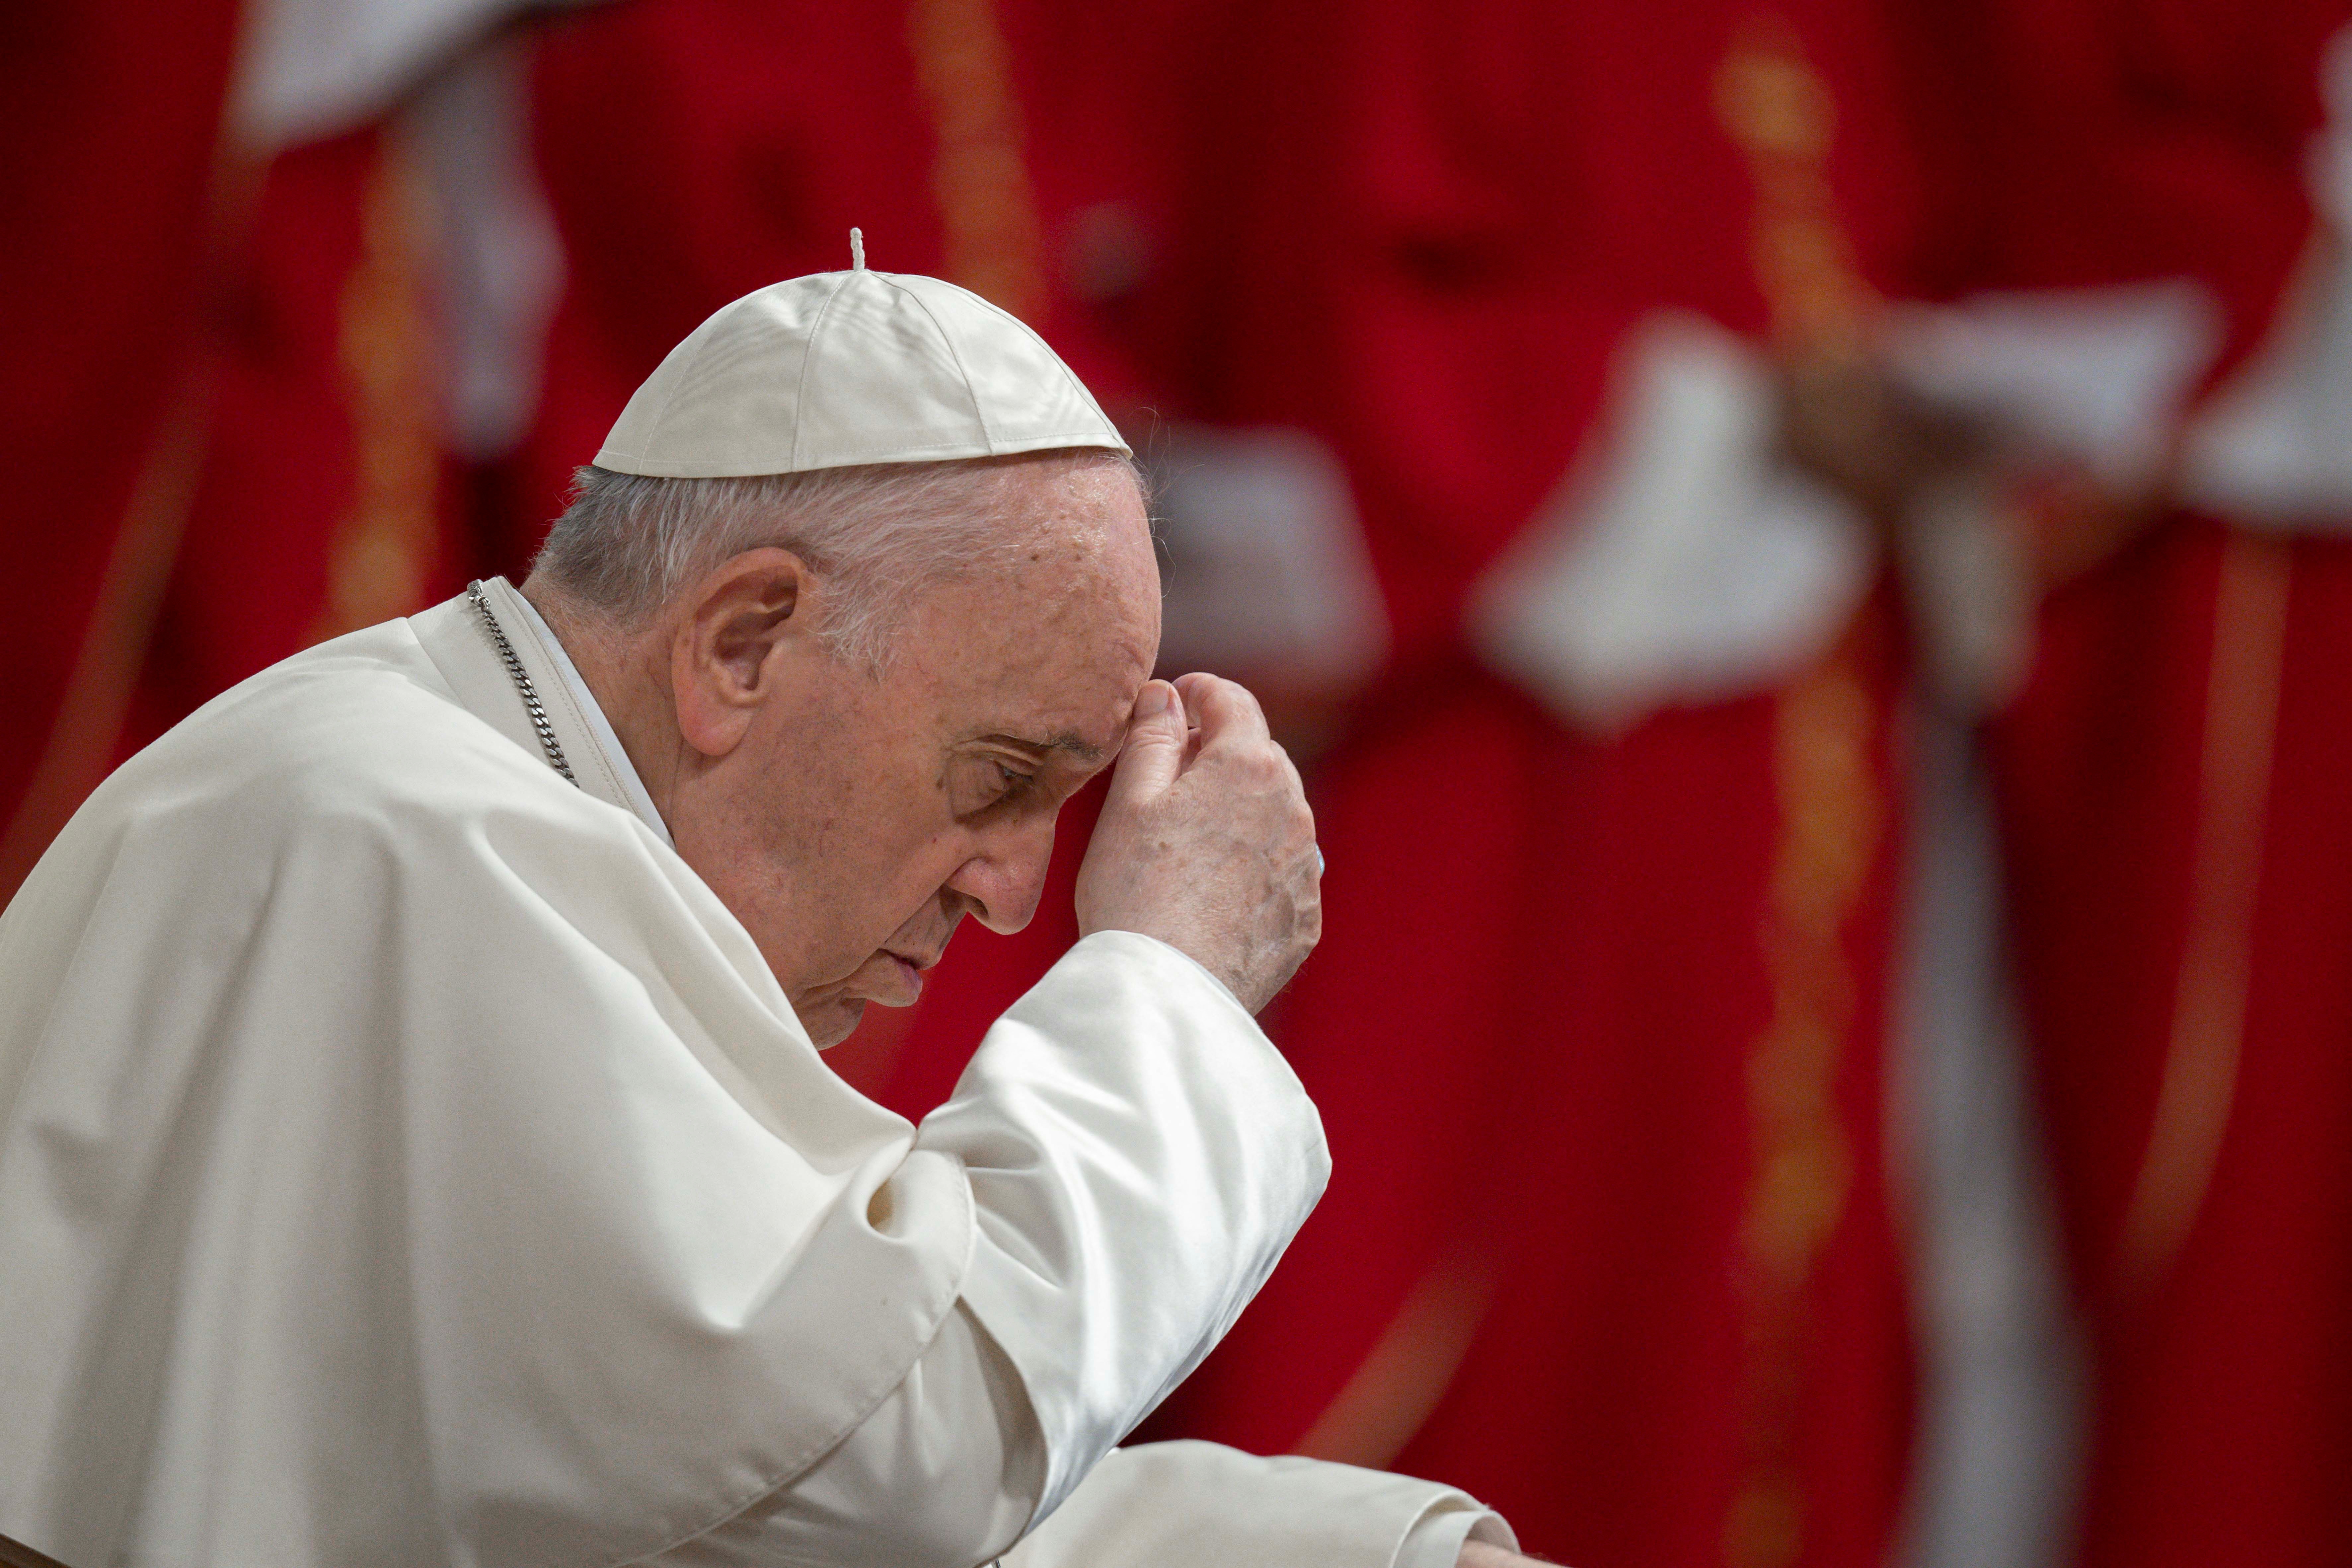 El papa Francisco solicitó orar de manera conjunta para que tragedias como la de Texas y Melilla no vuelvan a ocurrir (Foto: Vatican Media/­Francesco Sforza)